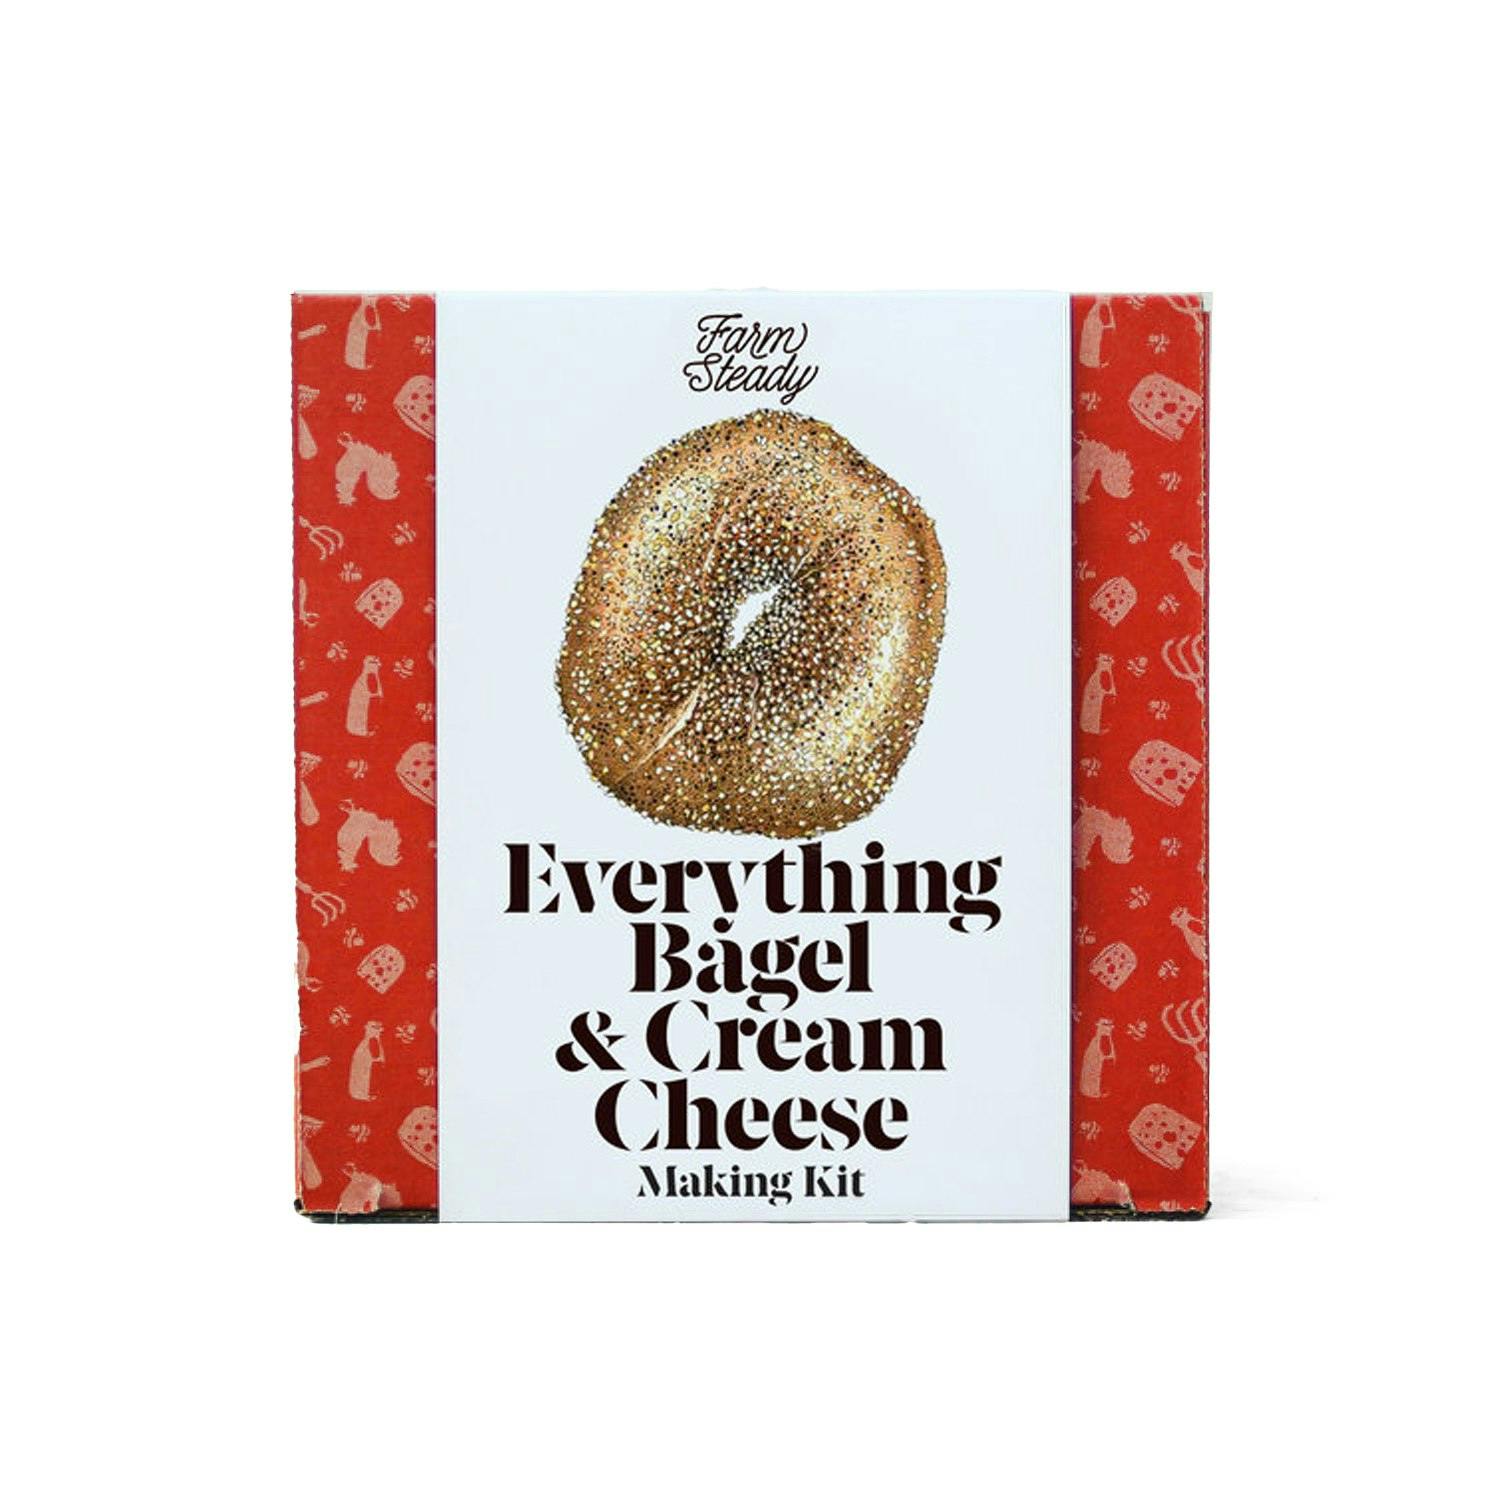 Everything Bagel & Cream Cheese Making Kit